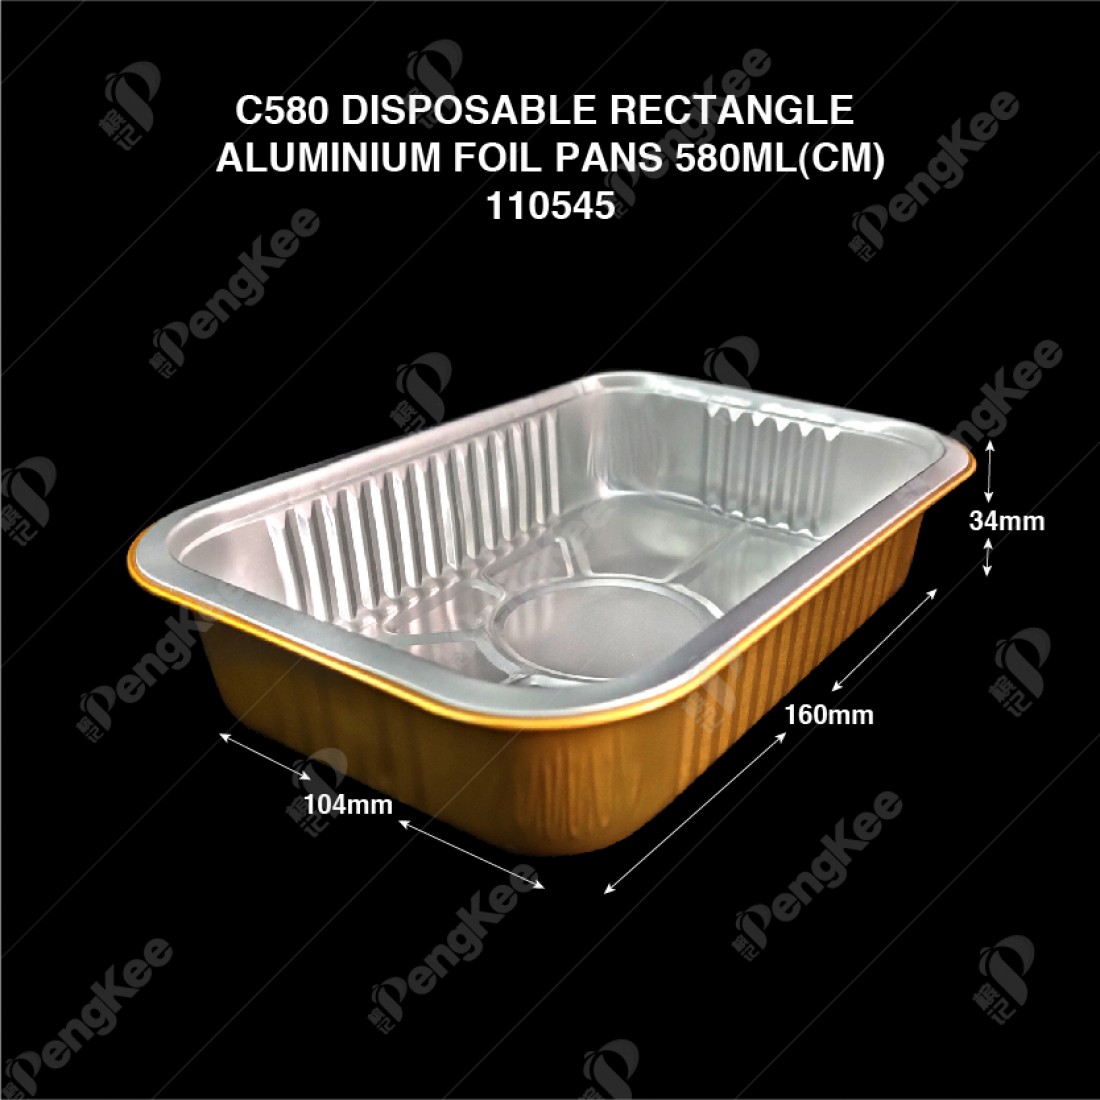 C580 DISPOSABLE RECTANGLE ALUMINIUM FOIL PANS 580ML(CM) (125'S/PKT)